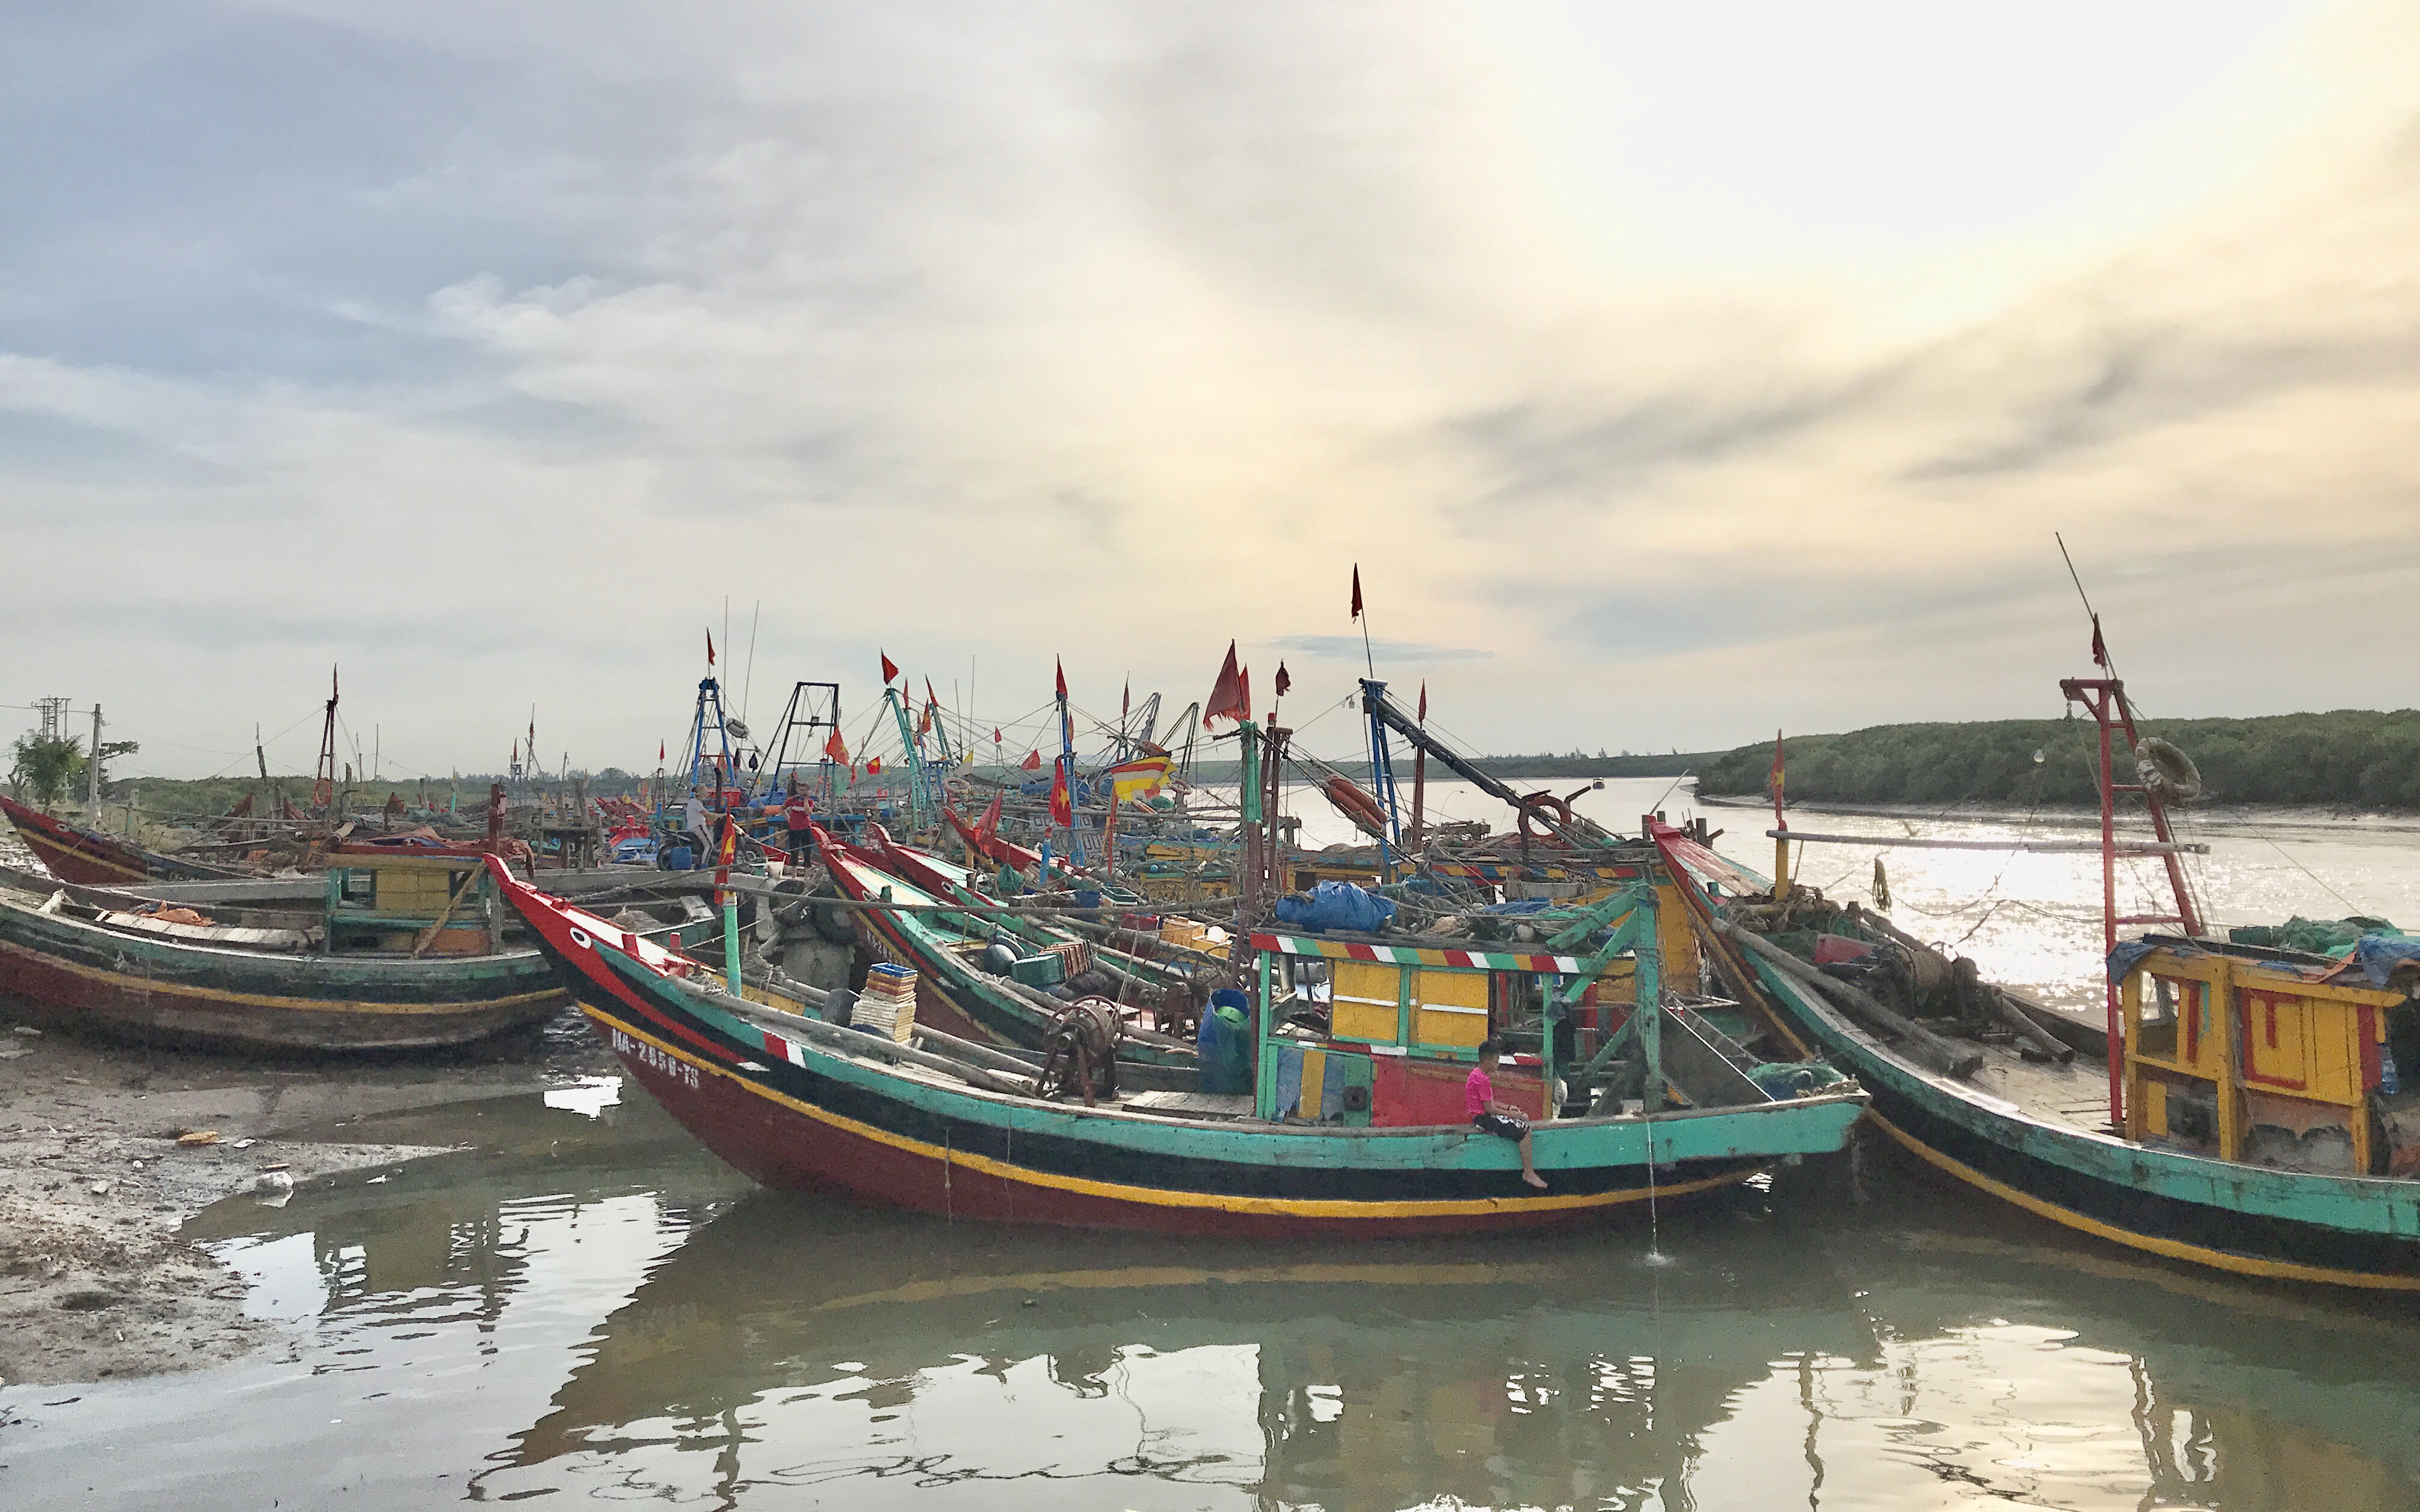 Hàng trăm tàu thuyền ở Nghệ An gác bến vì dịch Covid - 19